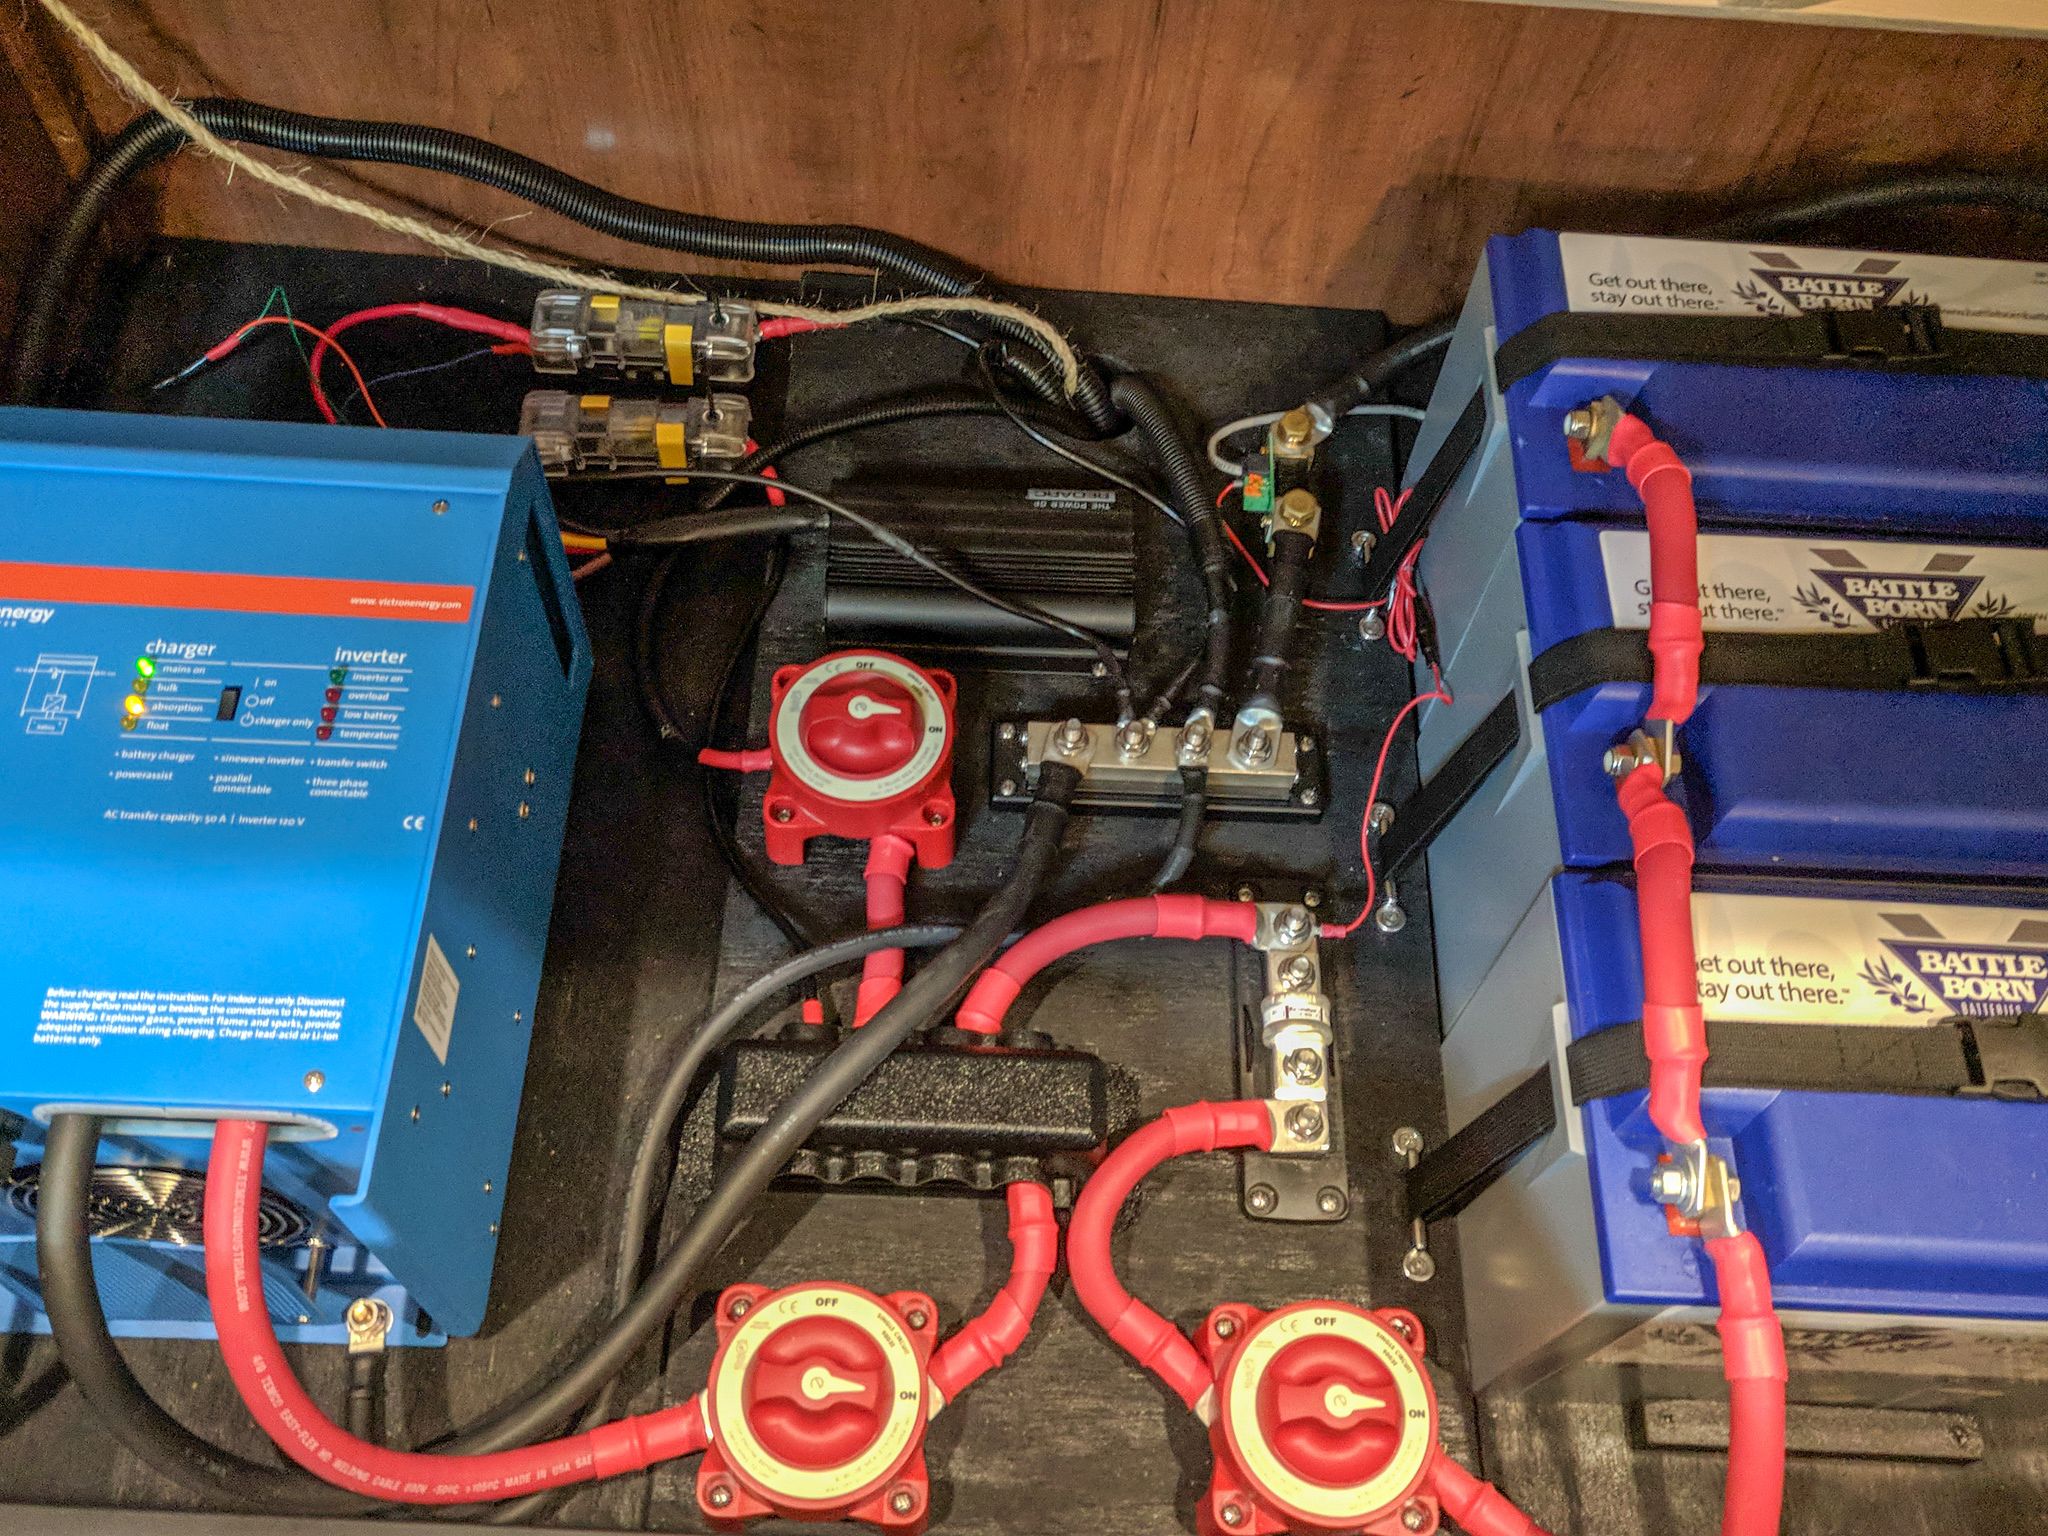 Final wiring setup